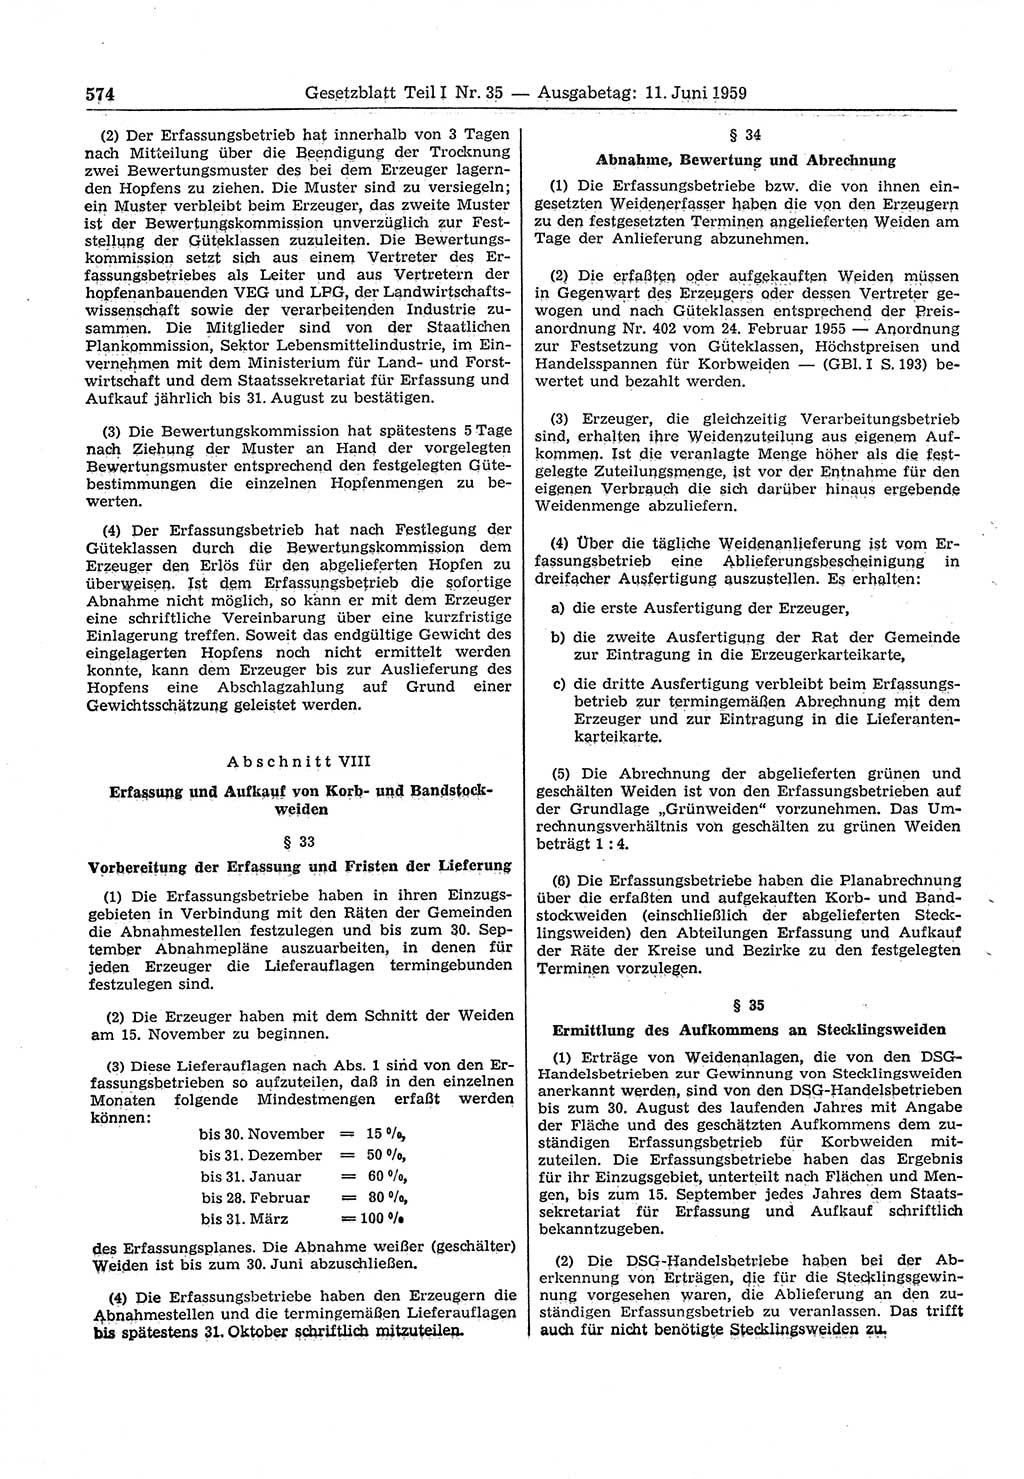 Gesetzblatt (GBl.) der Deutschen Demokratischen Republik (DDR) Teil Ⅰ 1959, Seite 574 (GBl. DDR Ⅰ 1959, S. 574)